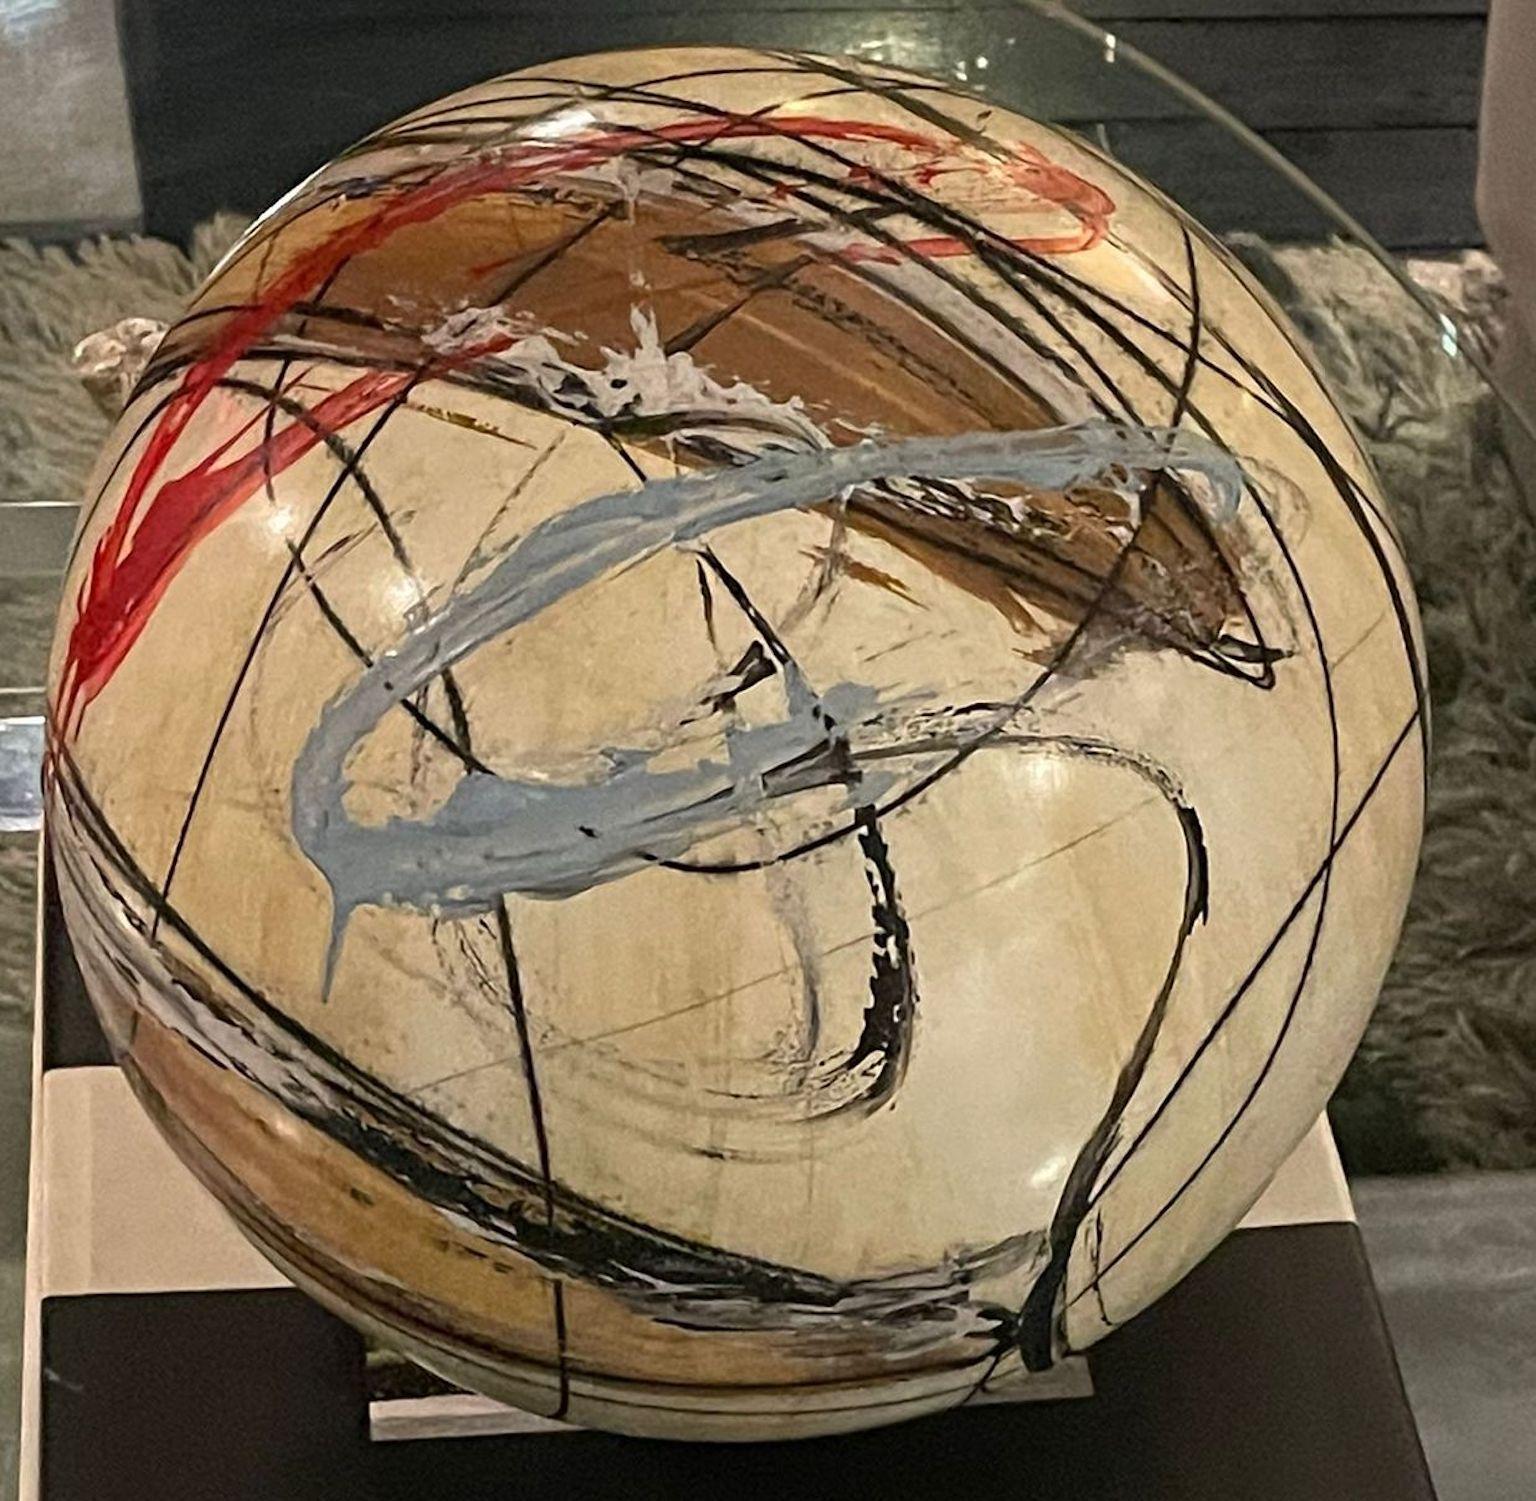 Par YURI ZAtarAIN, sphère de couleur de la collection intitulée « Animal Instinct »